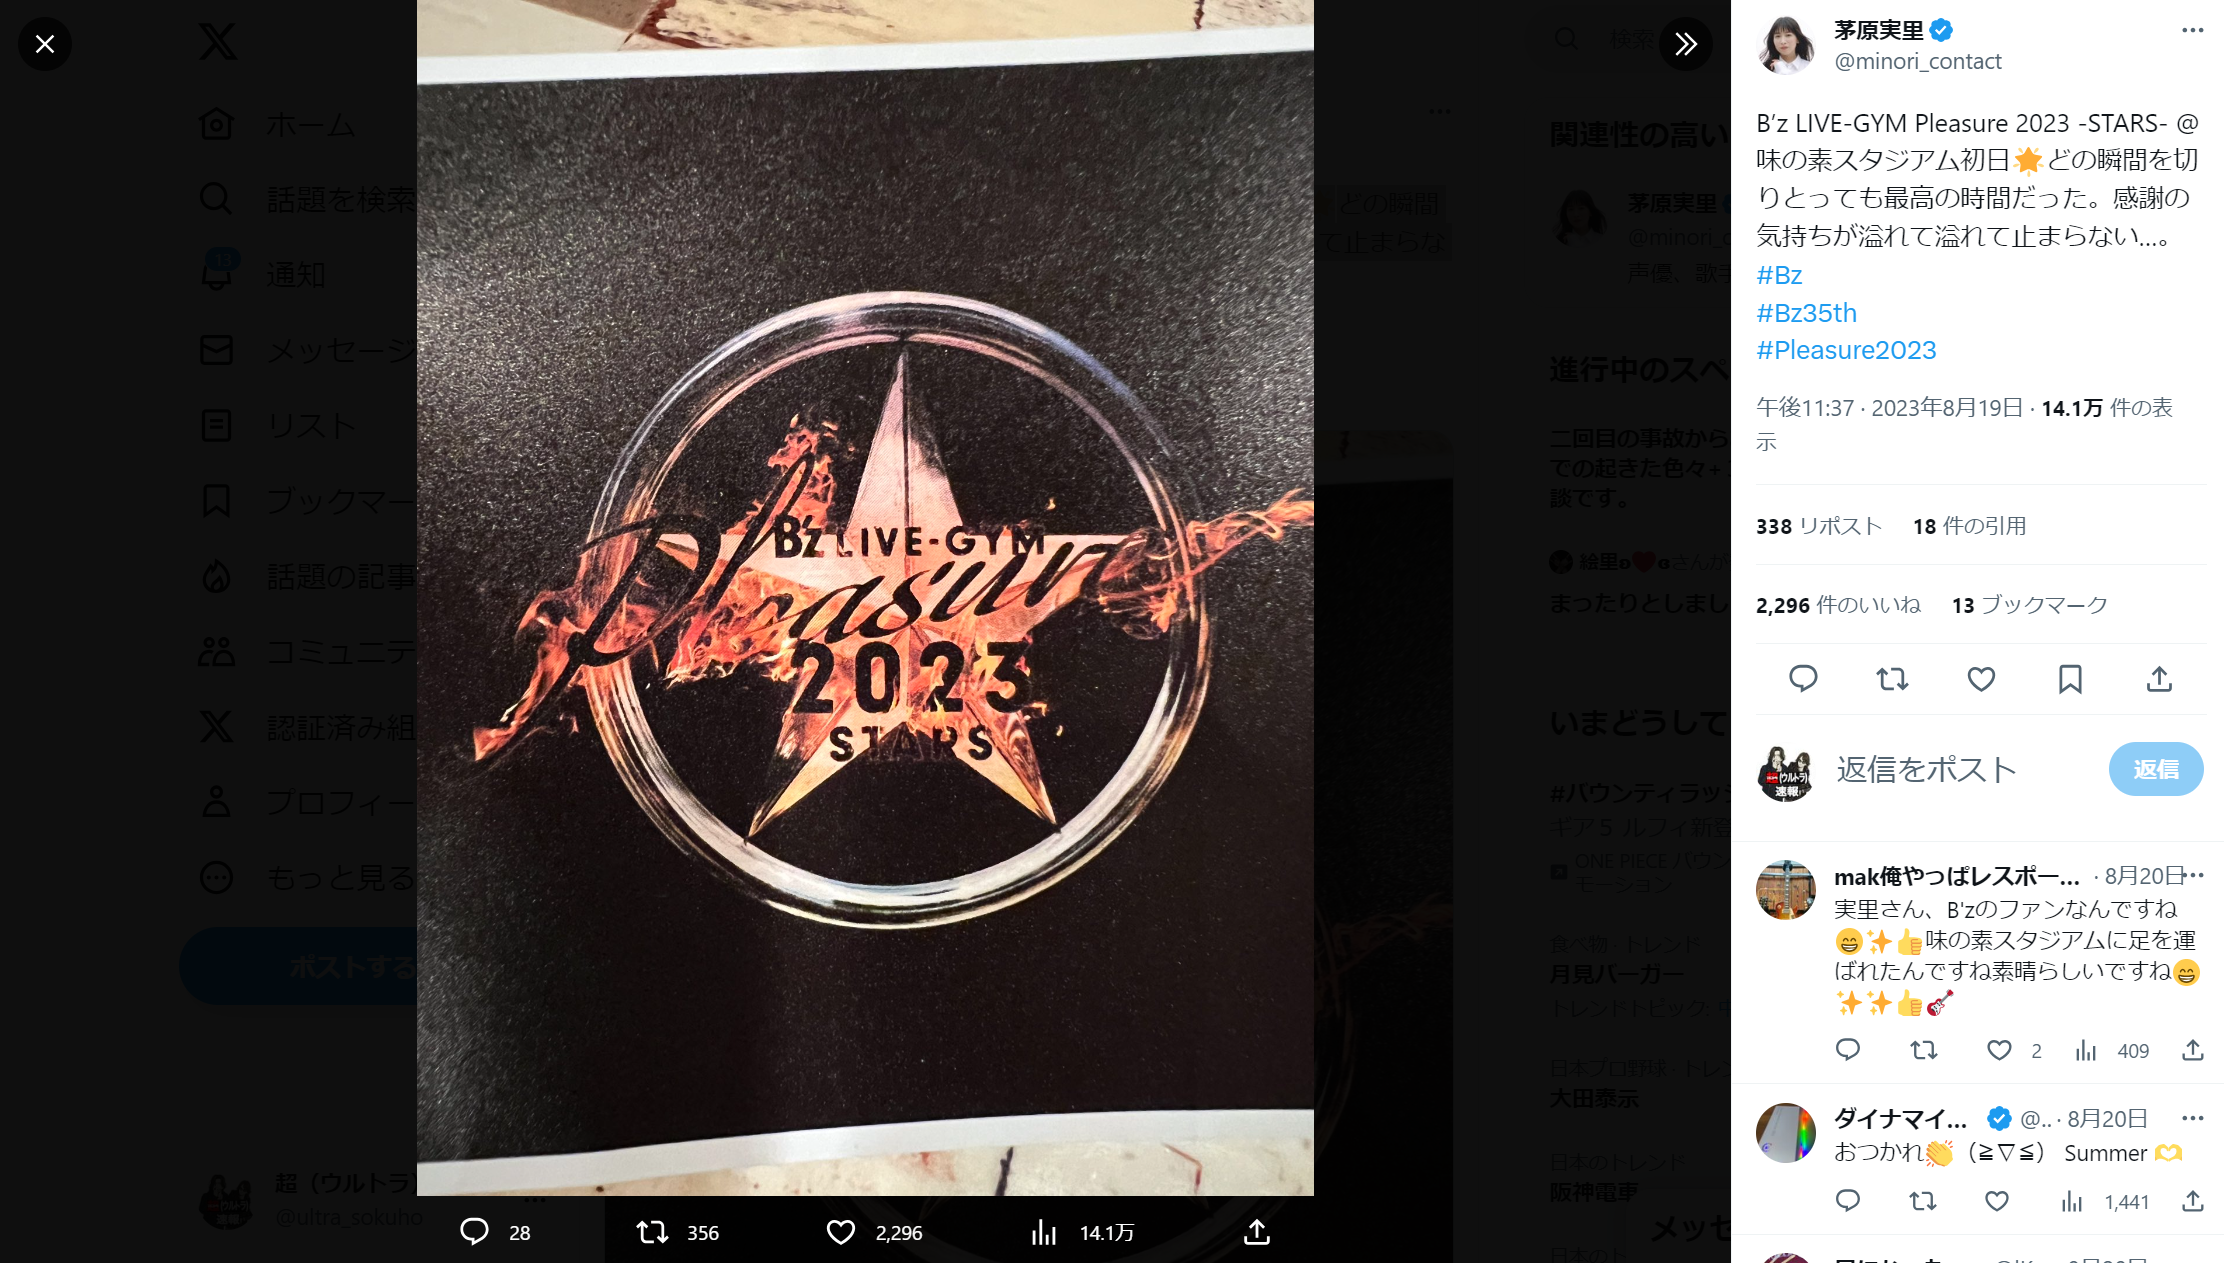 茅原実里が『B'z LIVE-GYM Pleasure 2023 -STARS-』を観覧したことを報告したXのポスト